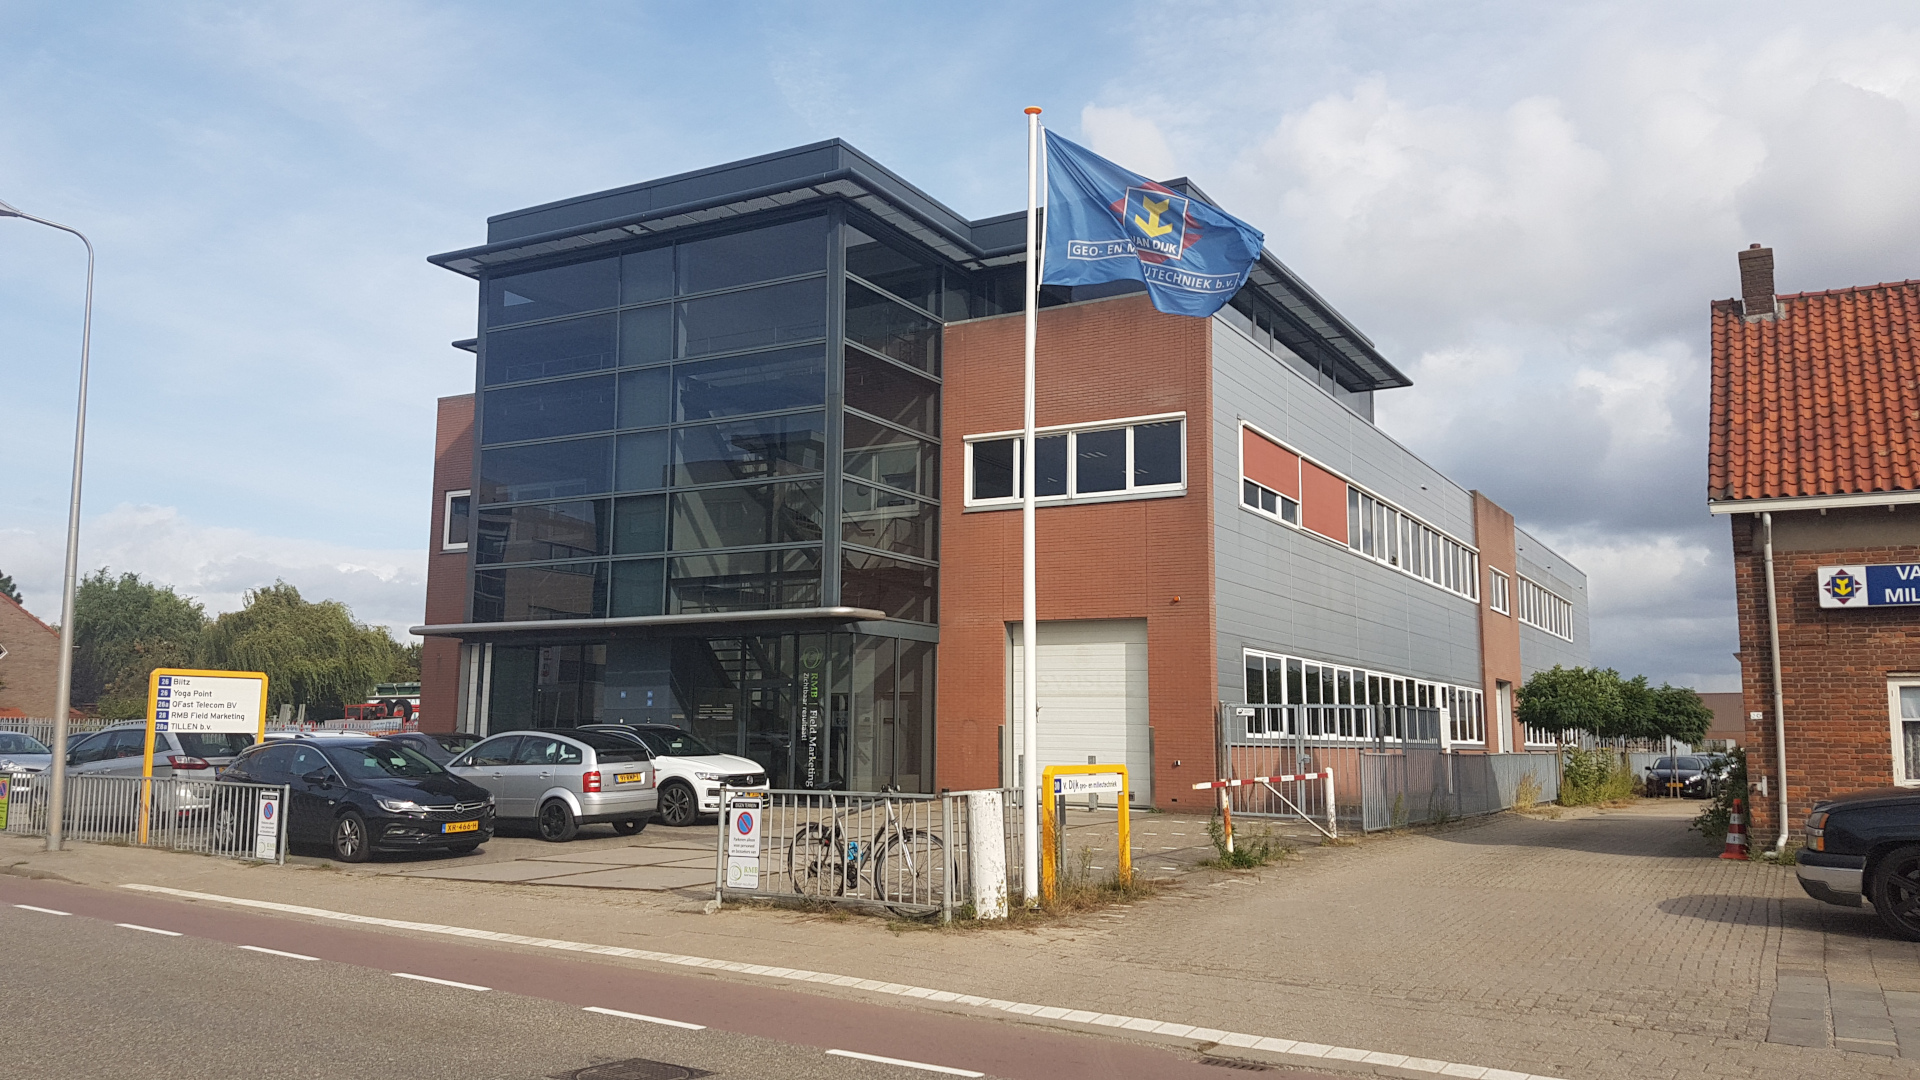 The front view of the Tillen office in de Meern